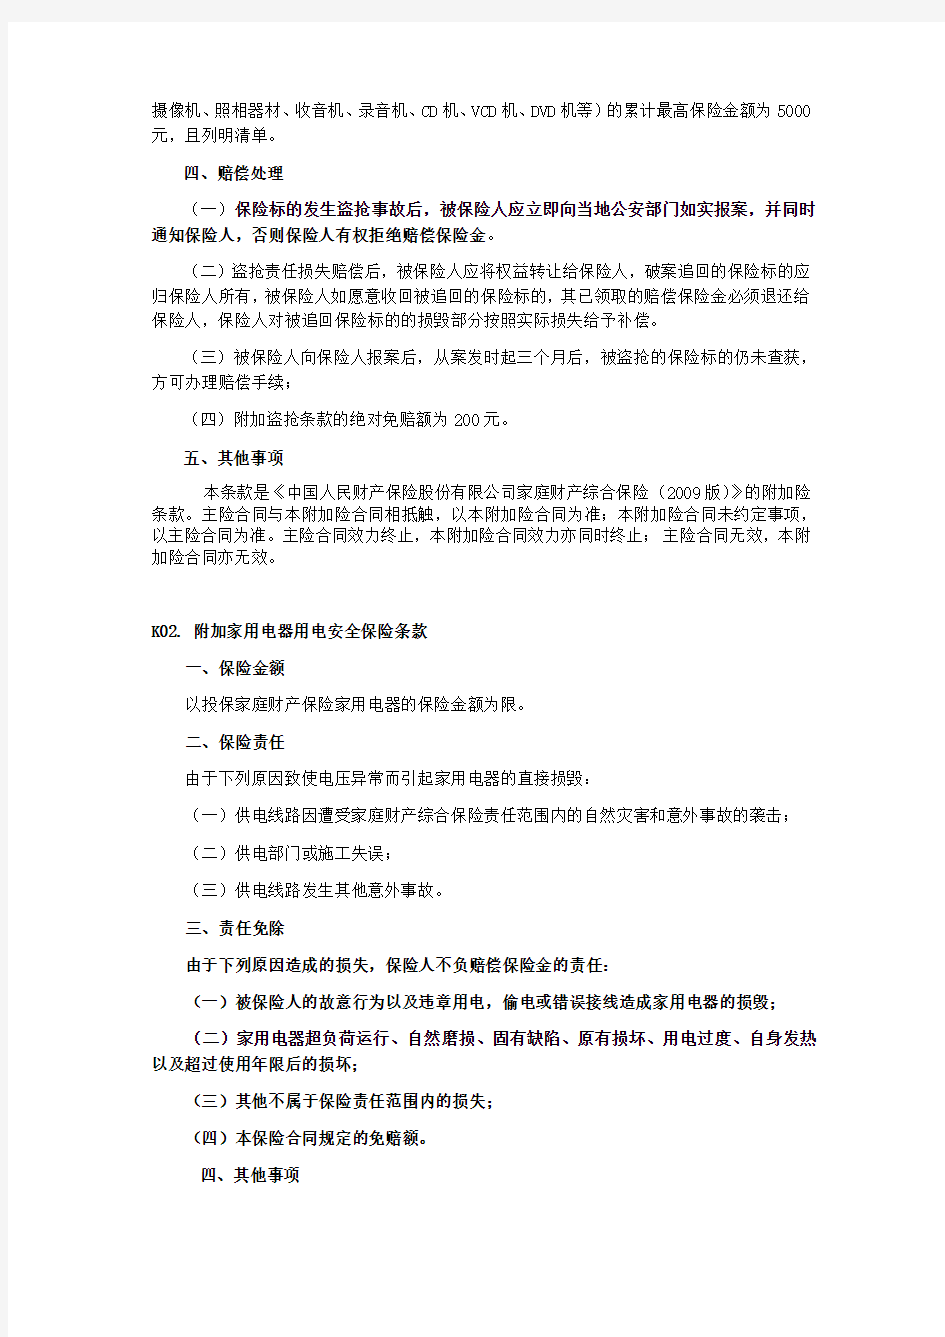 家庭财产综合保险附加险条款(2009版) 下列条款是中国人民财产